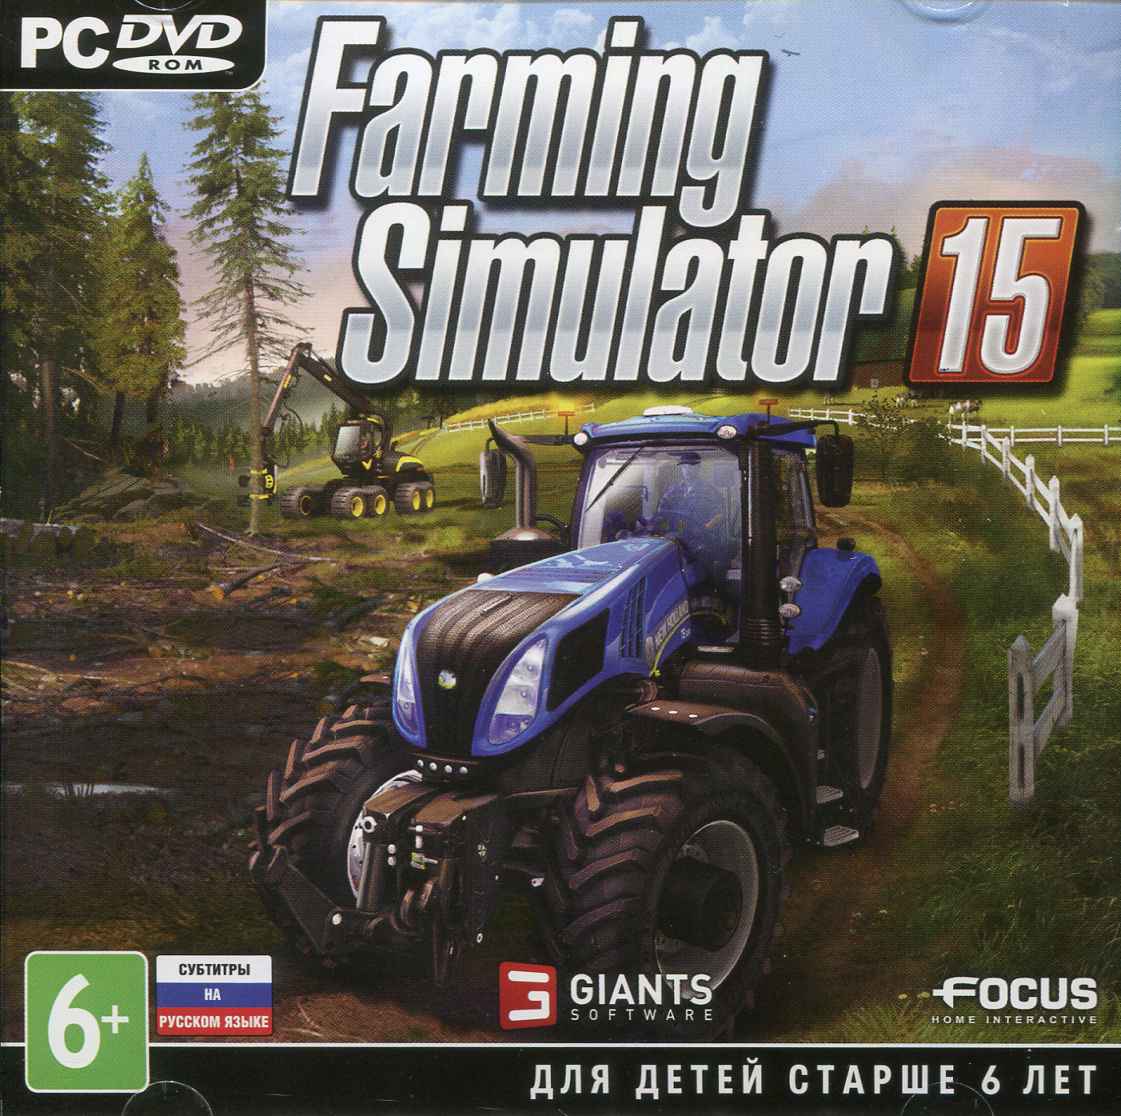 Steam - аккаунт с  ИГРОЙ Farming Simulator 2015